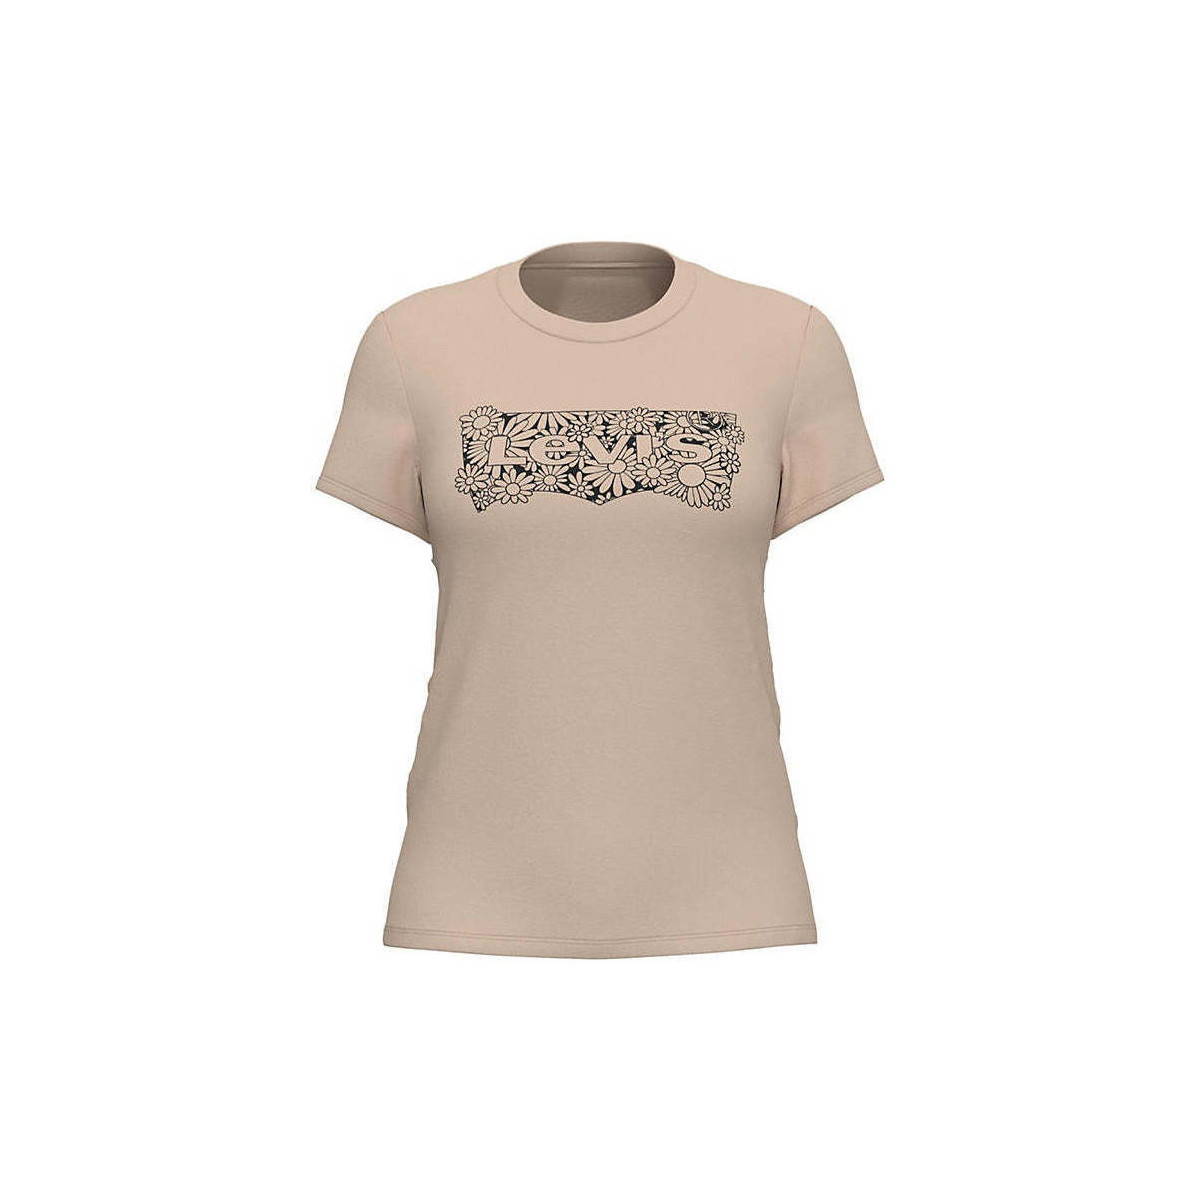 Textil Mulher T-shirts e Pólos Levi's 1736918000-10-31 Laranja